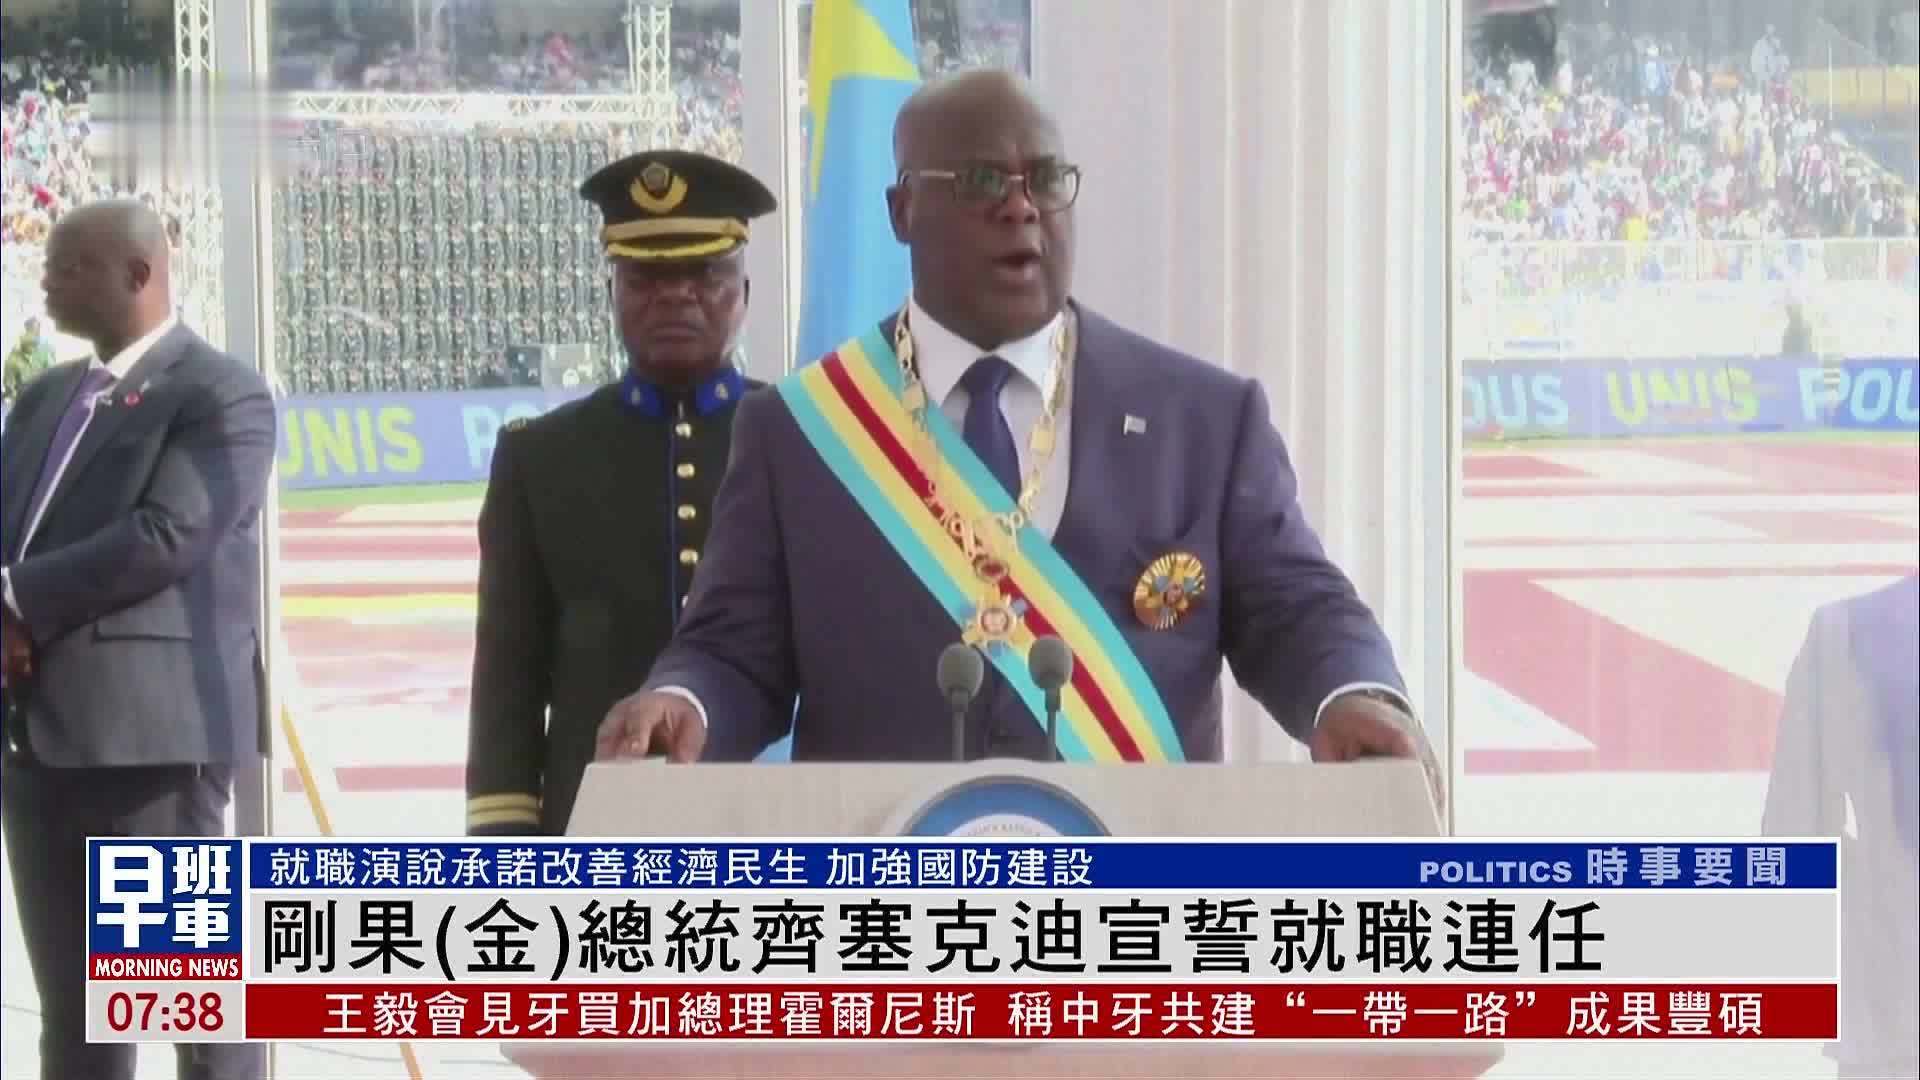 刚果(金)总统齐塞克迪宣誓就职连任